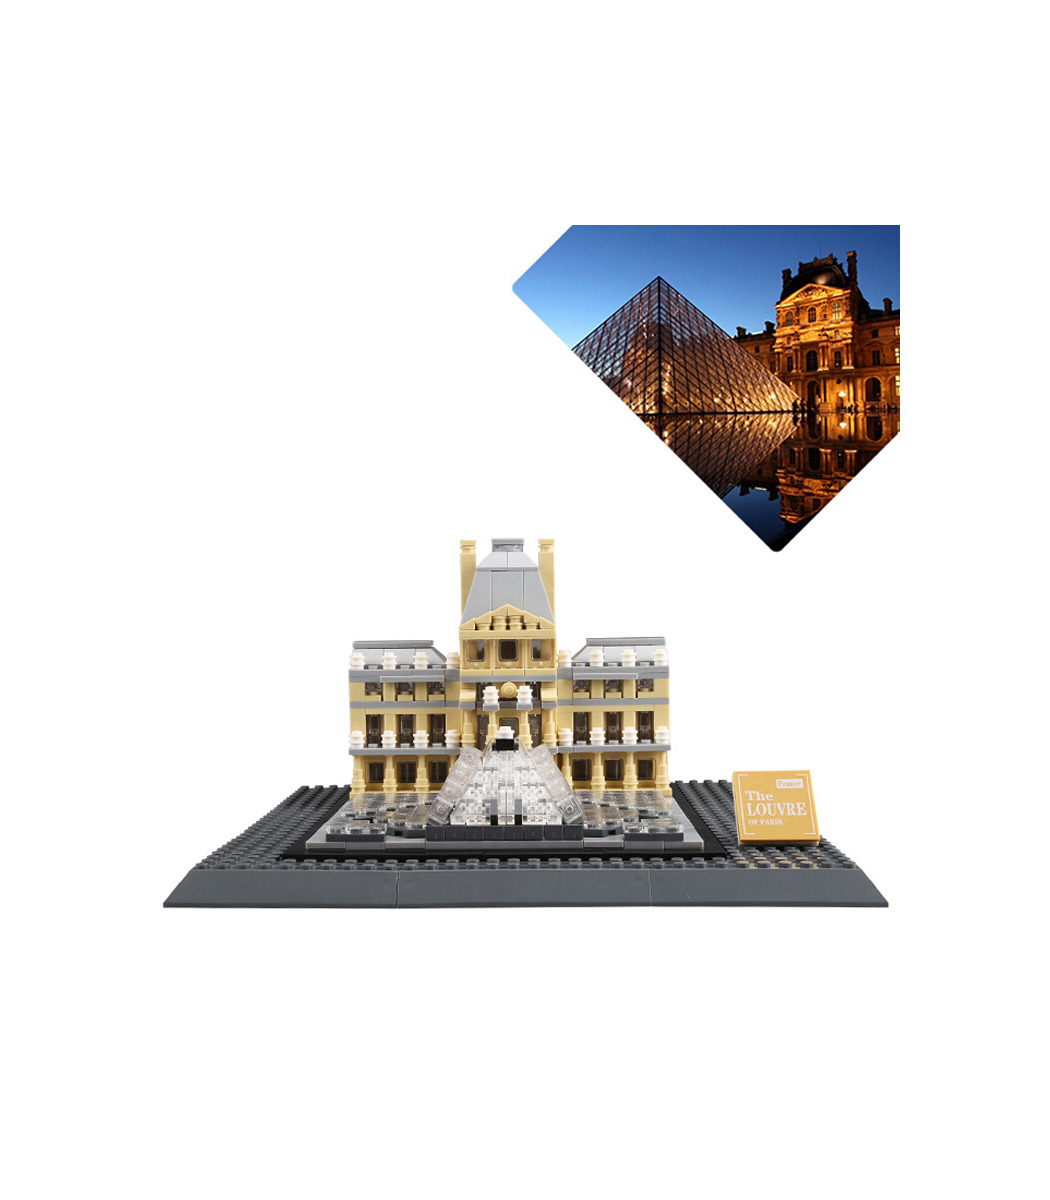 Details about   The Louvre of Paris 821pcs Architecture Building Block Set